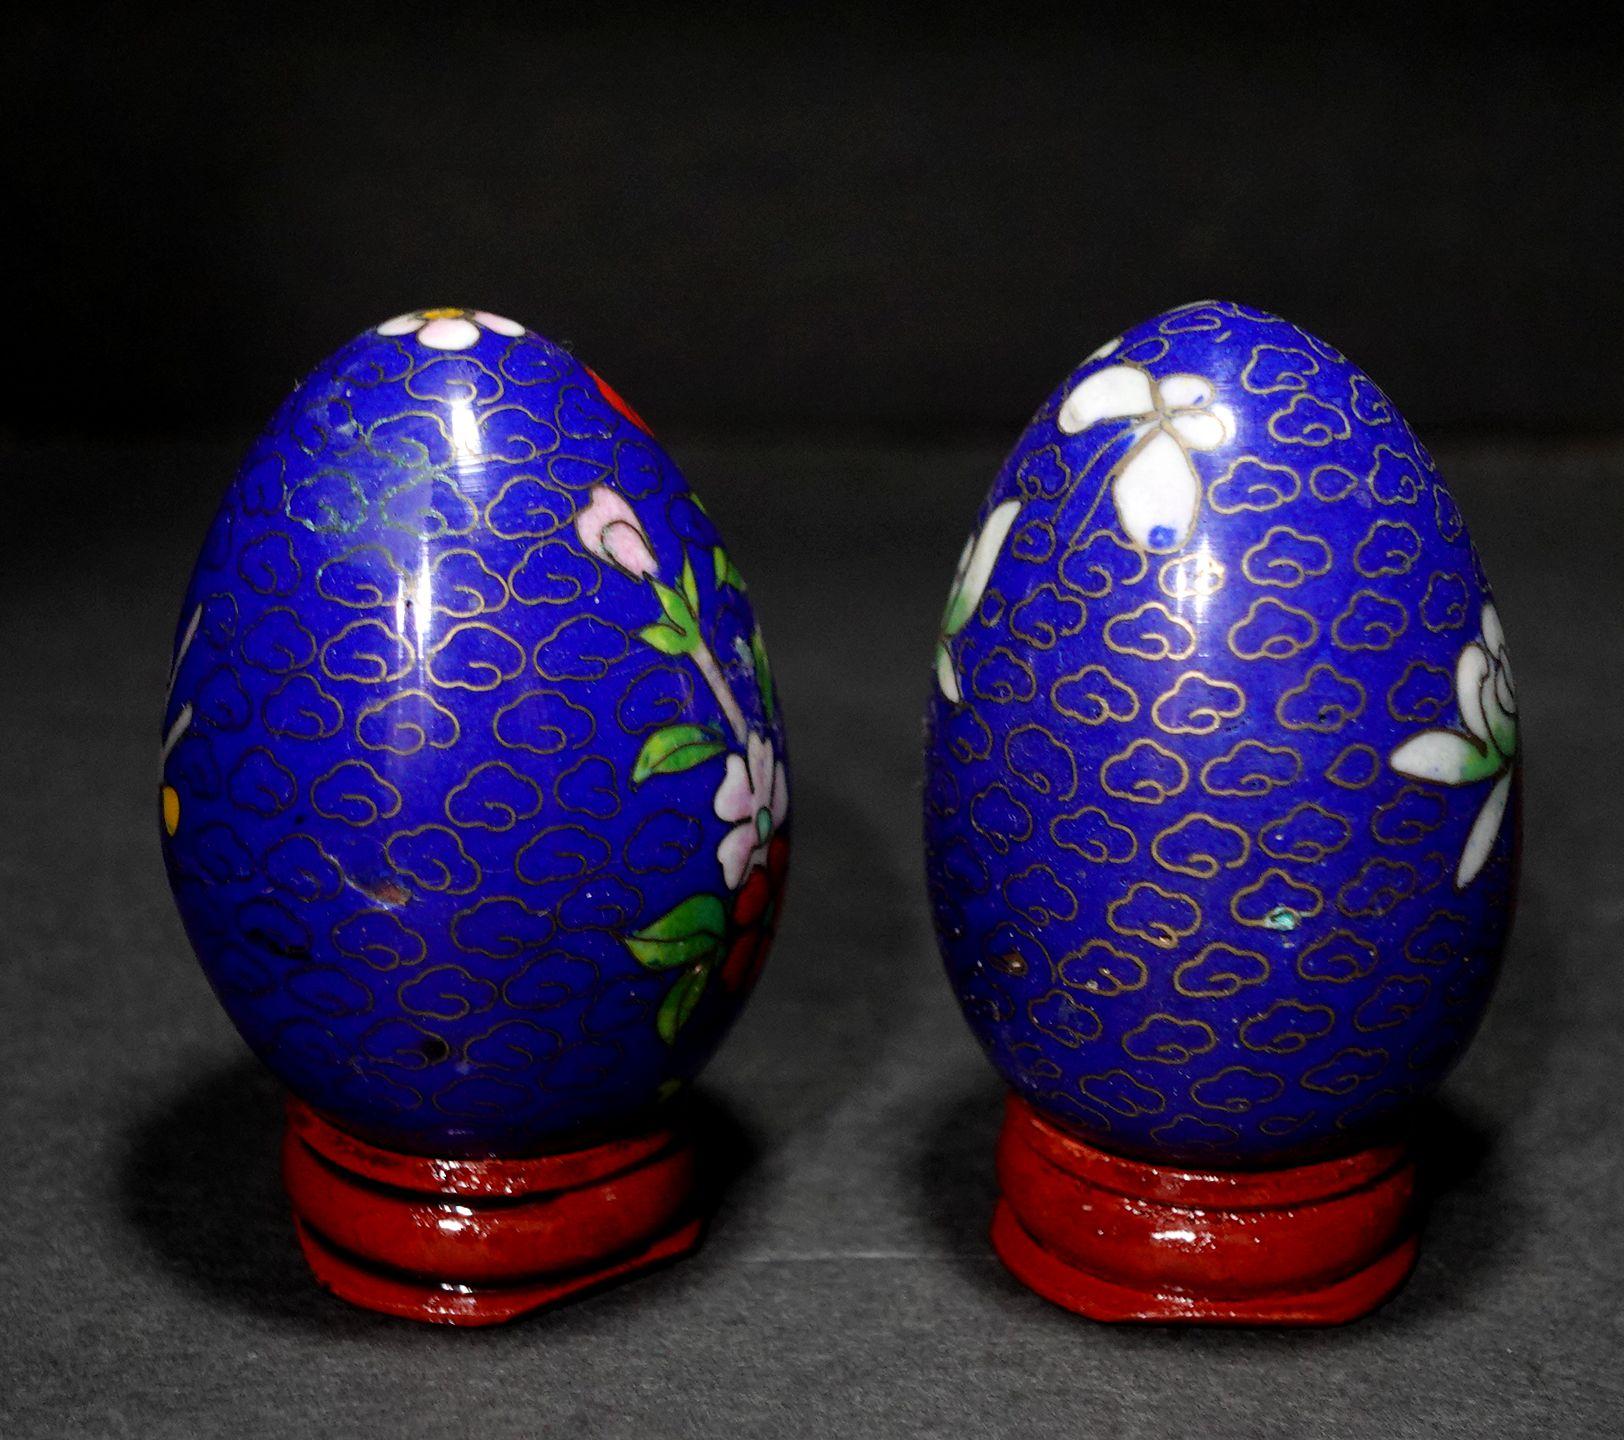 Cloissoné Two Chinese Cloisonné Enamel Eggs 